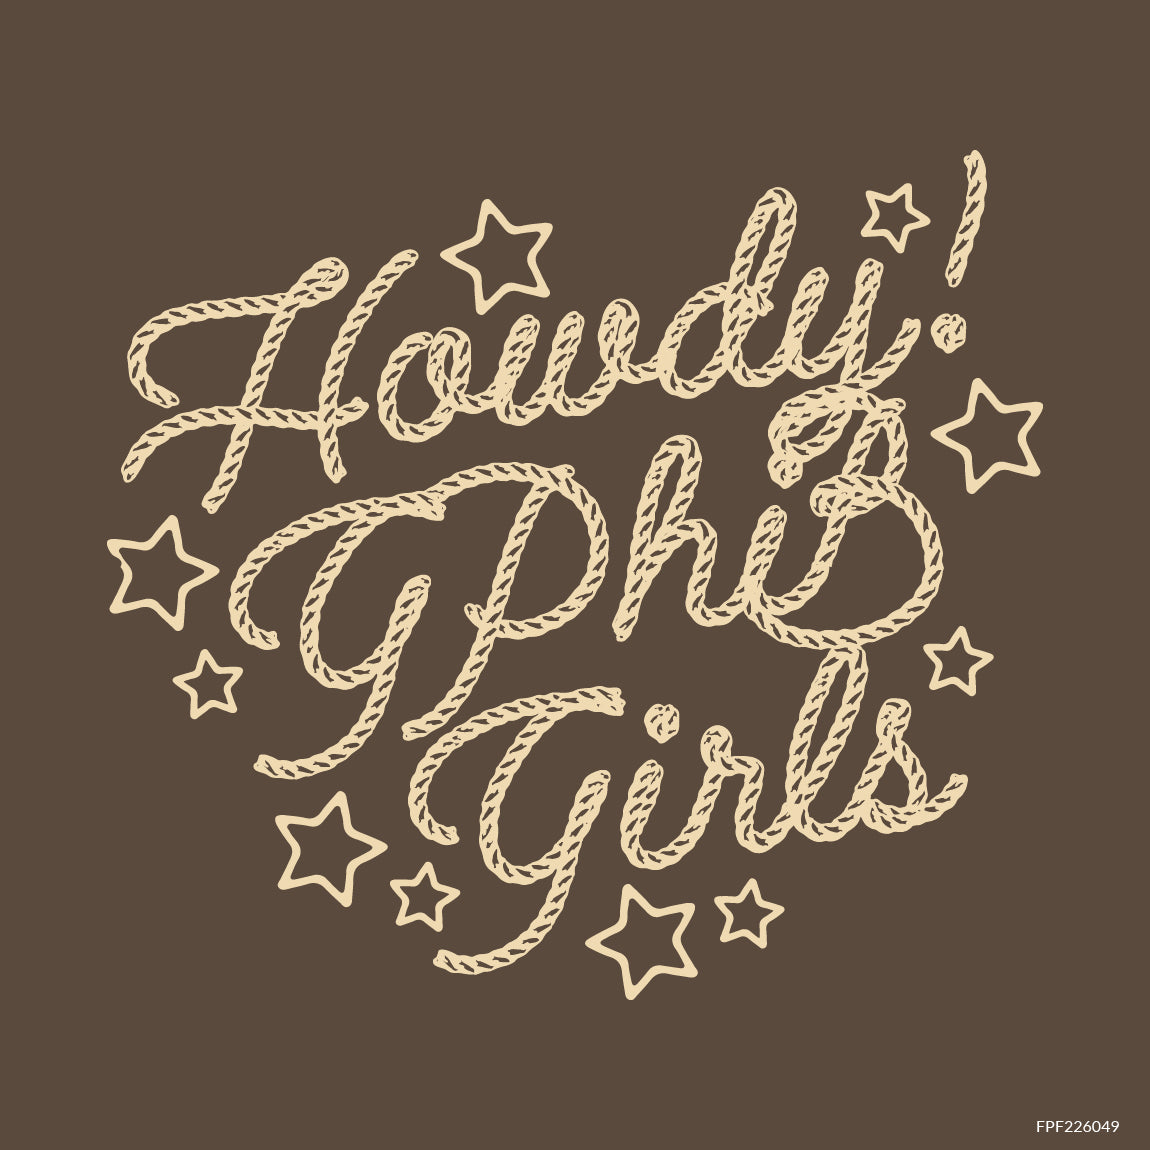 Howdy, Girls!